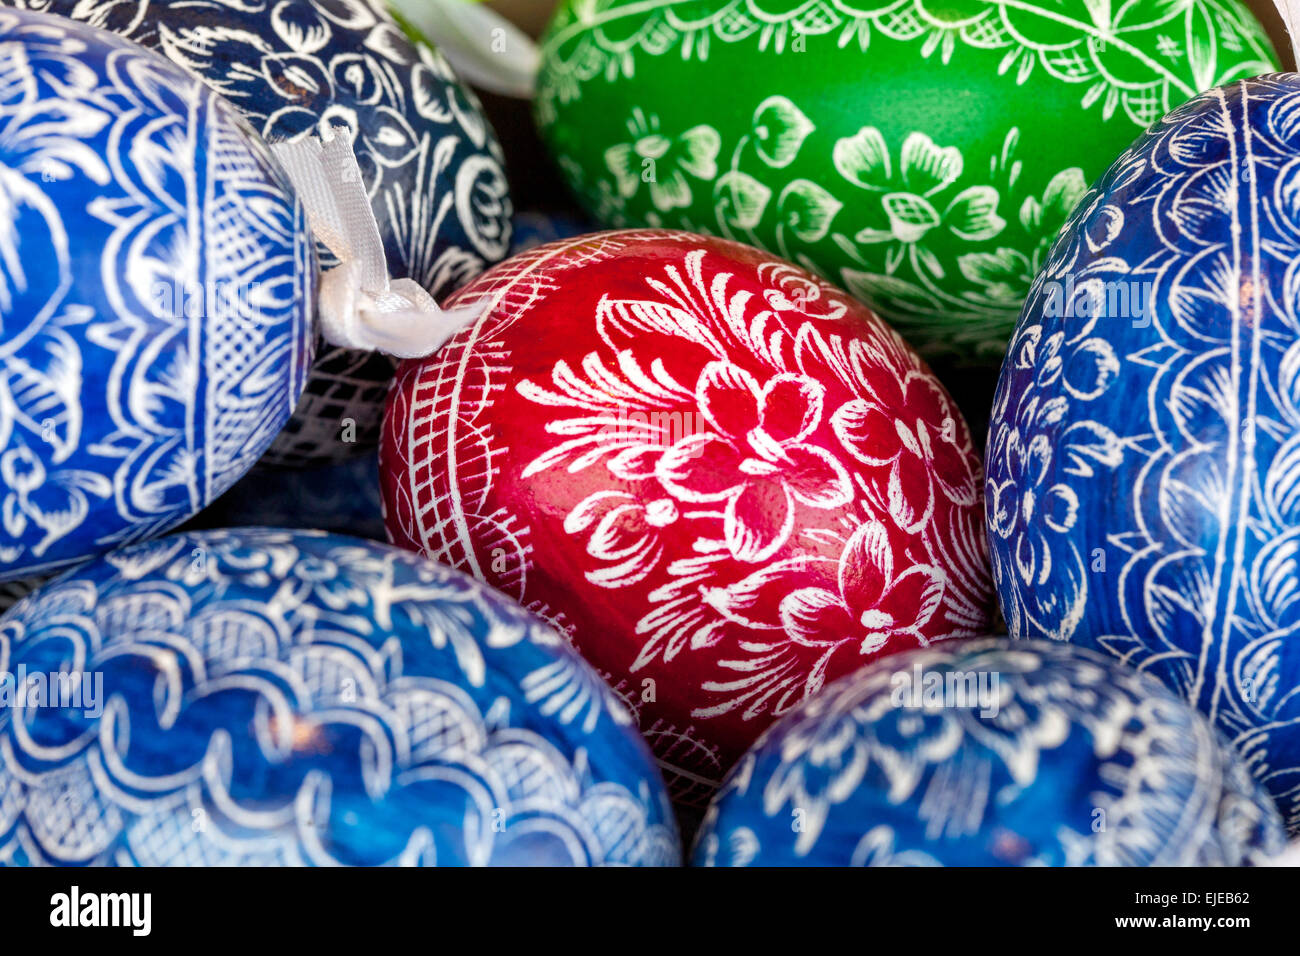 Œufs de Pâques traditionnels Prague République tchèque Europe oeufs de Pâques peints Coloriage oeufs de Pâques fragiles à la main faits souvenirs colorés motif décoratif Banque D'Images